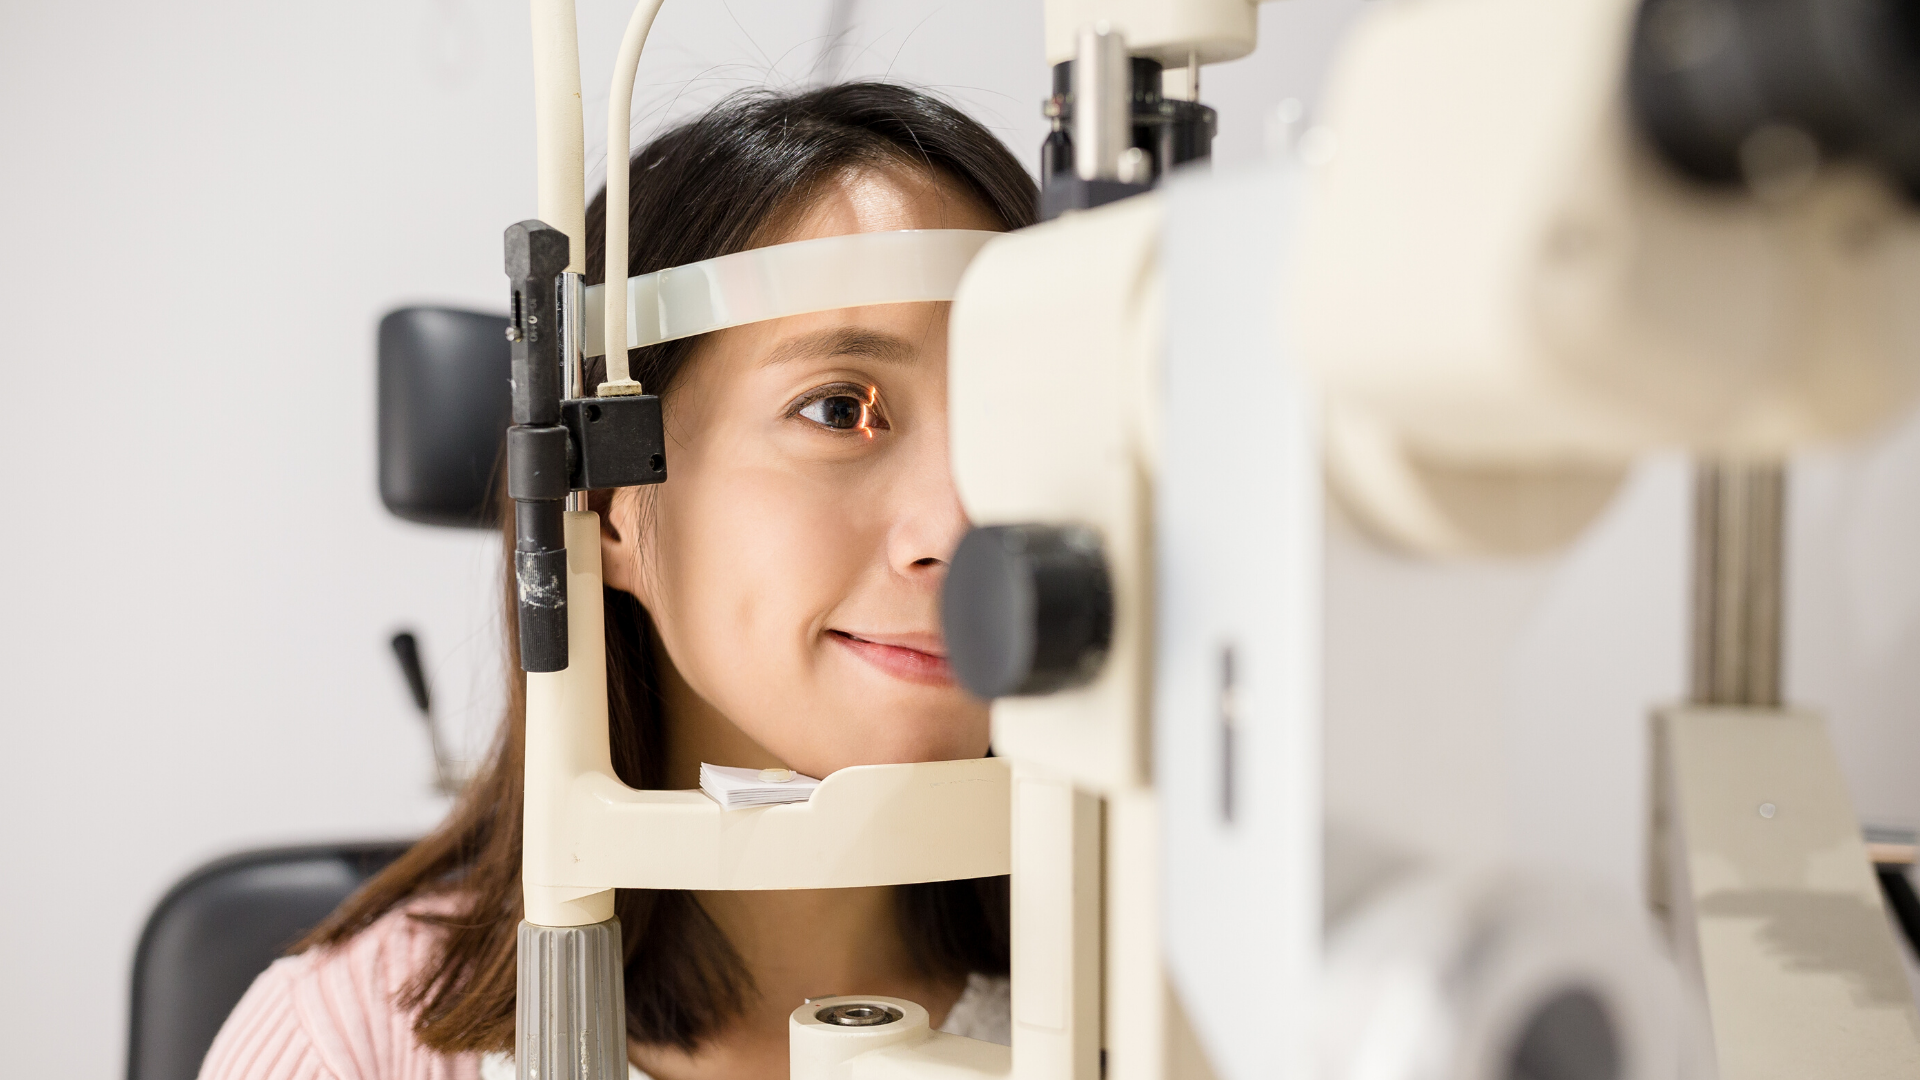 Диагностика и лечение глазных заболеваний